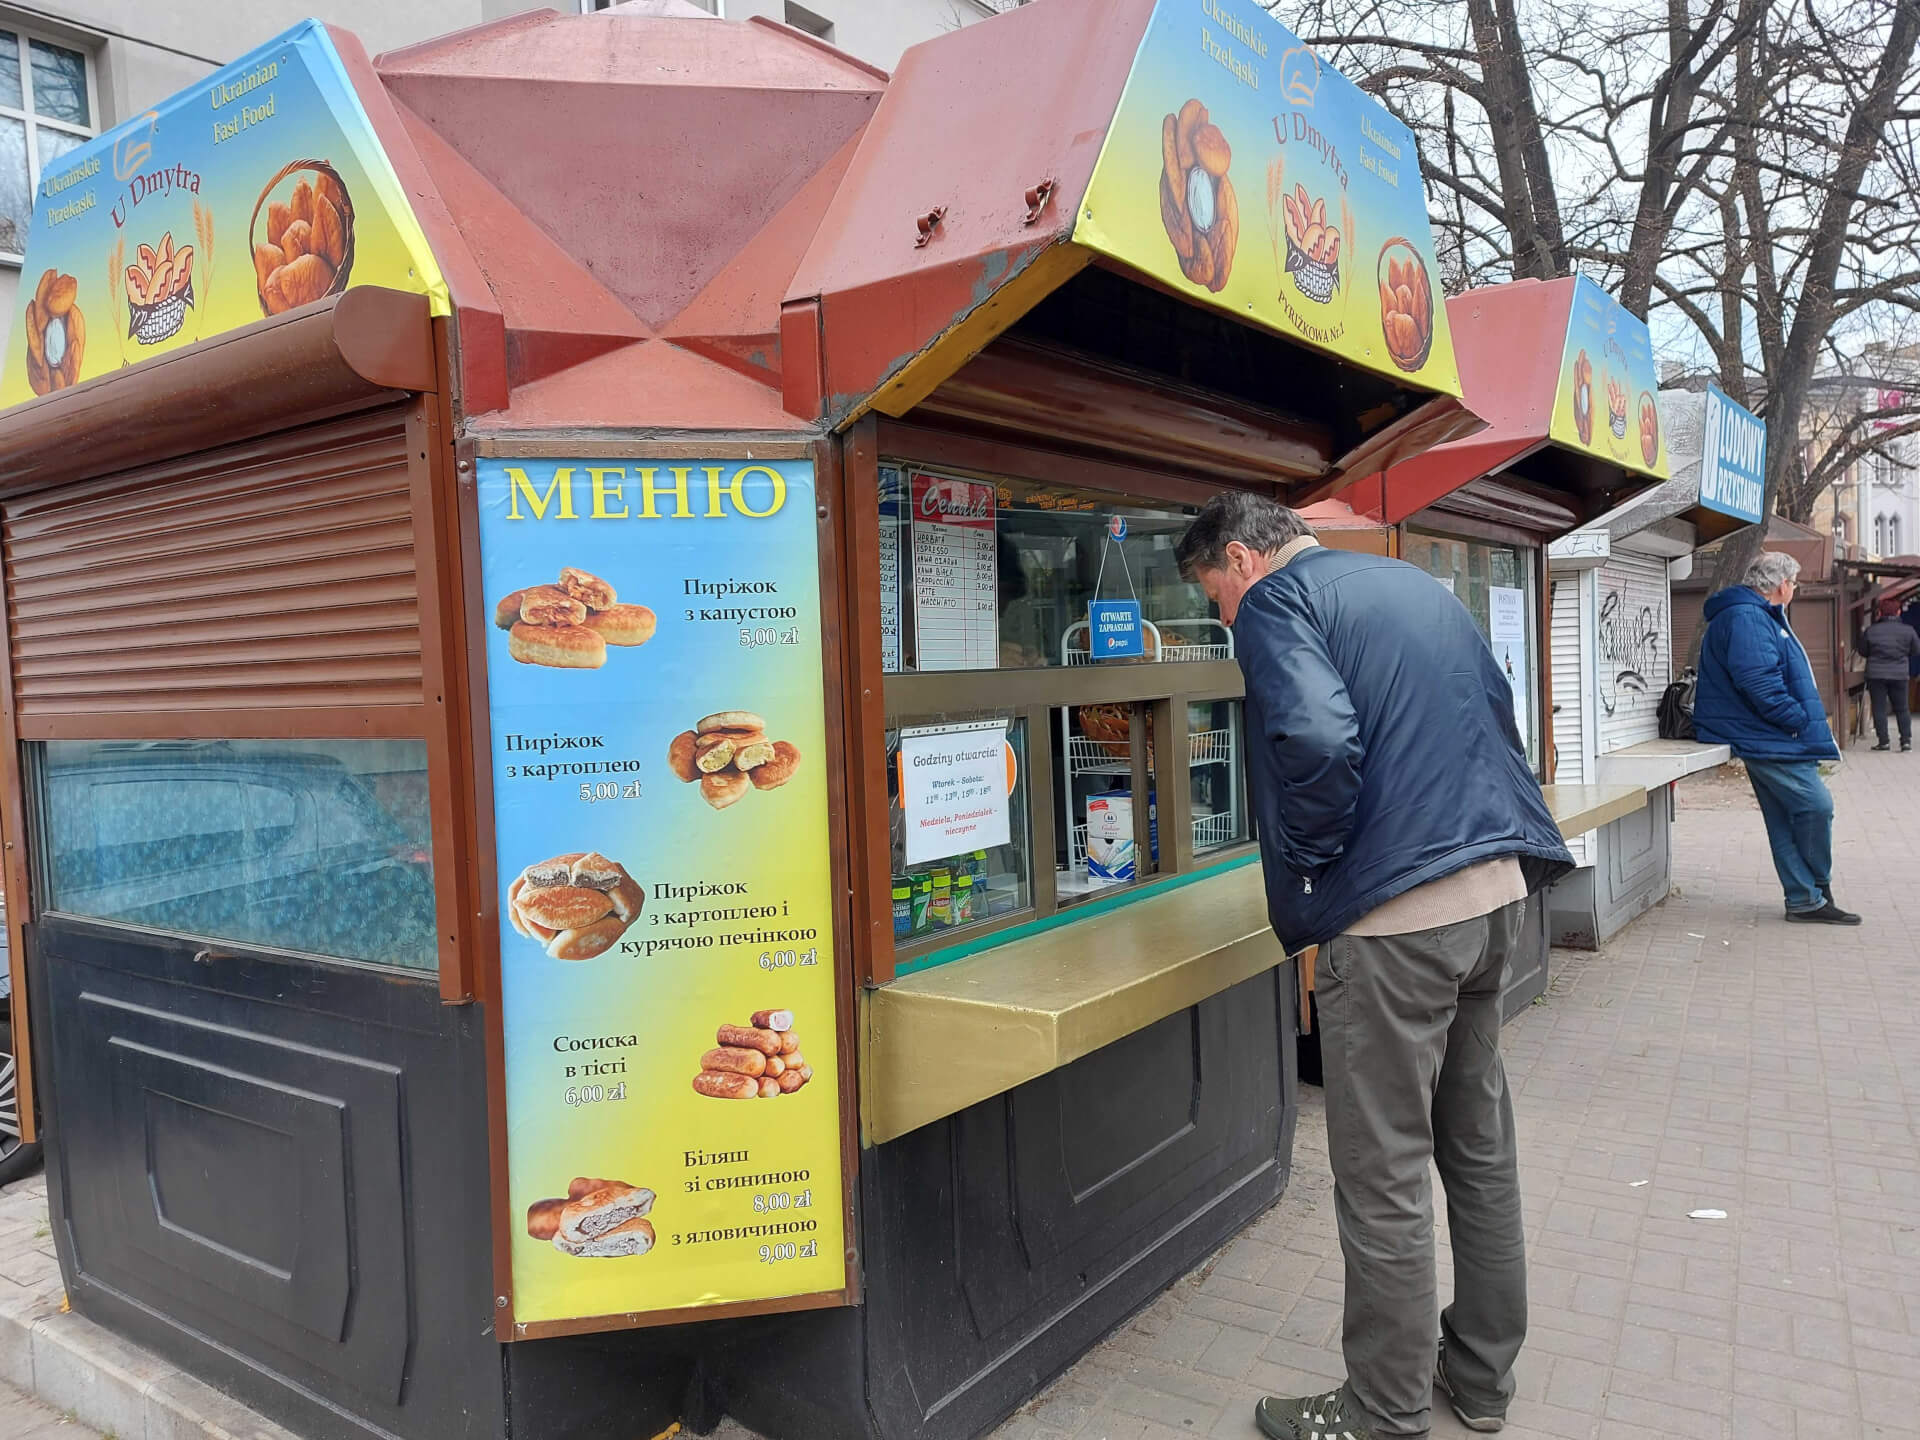 Ukraińskie przysmaki w Gliwicach